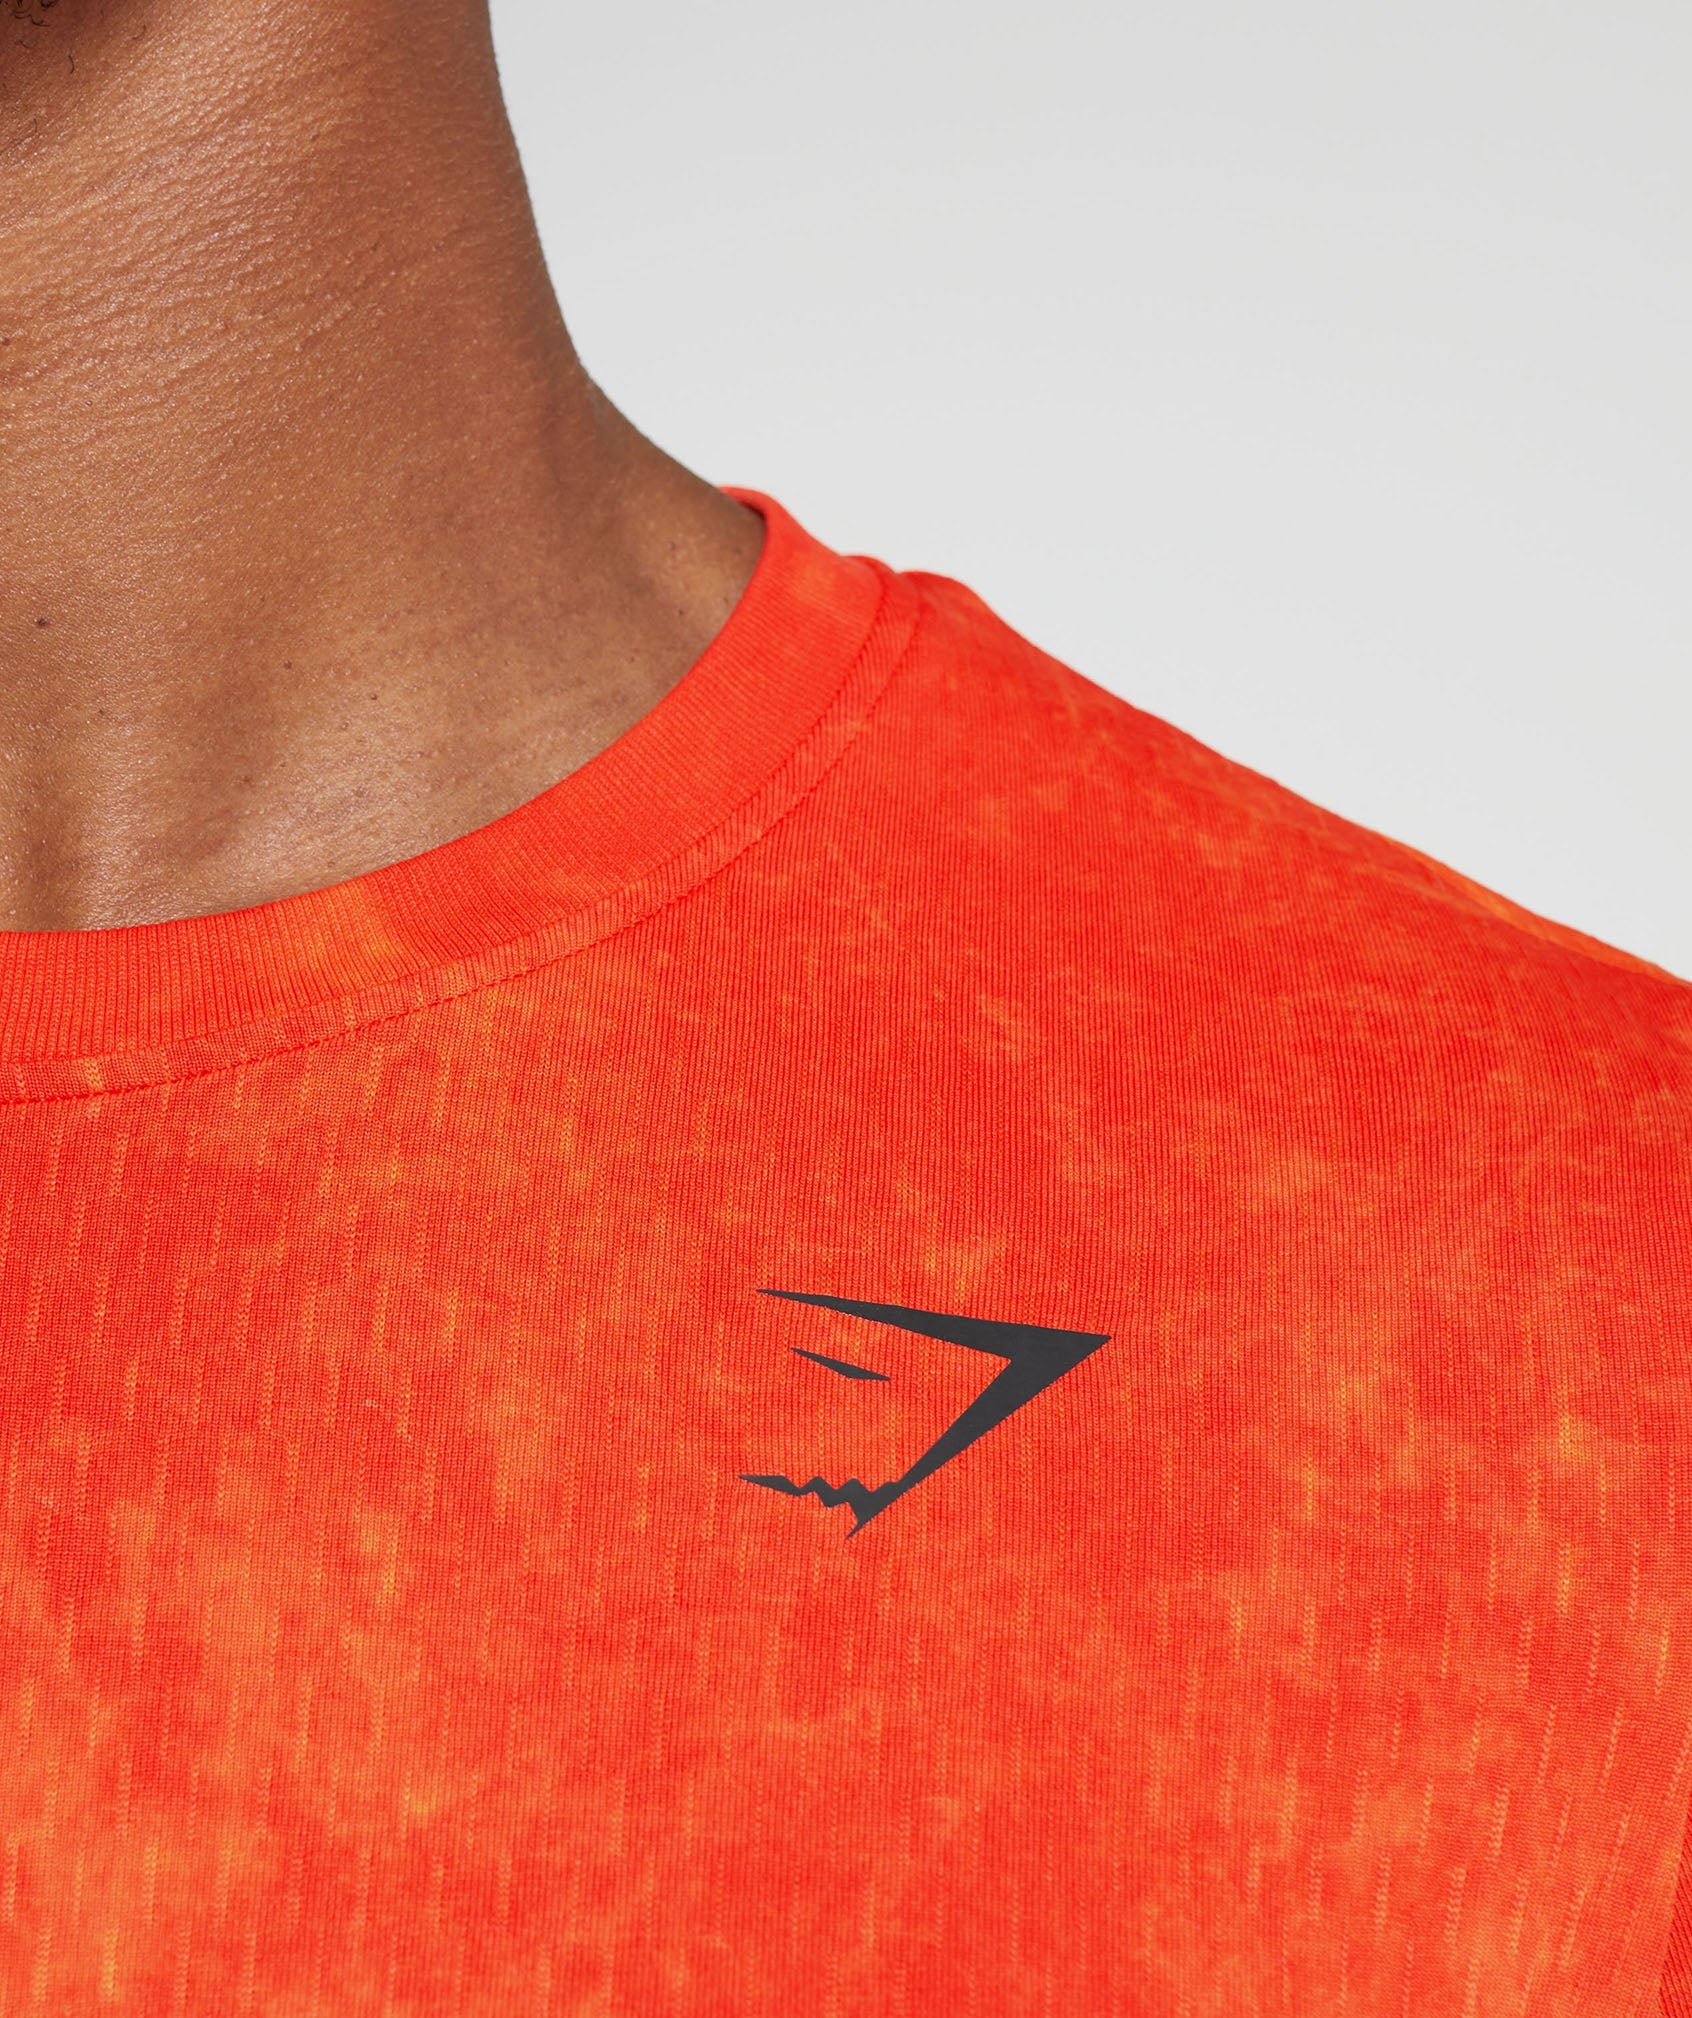 Gymshark Legacy T-Shirt - Aerospace Orange